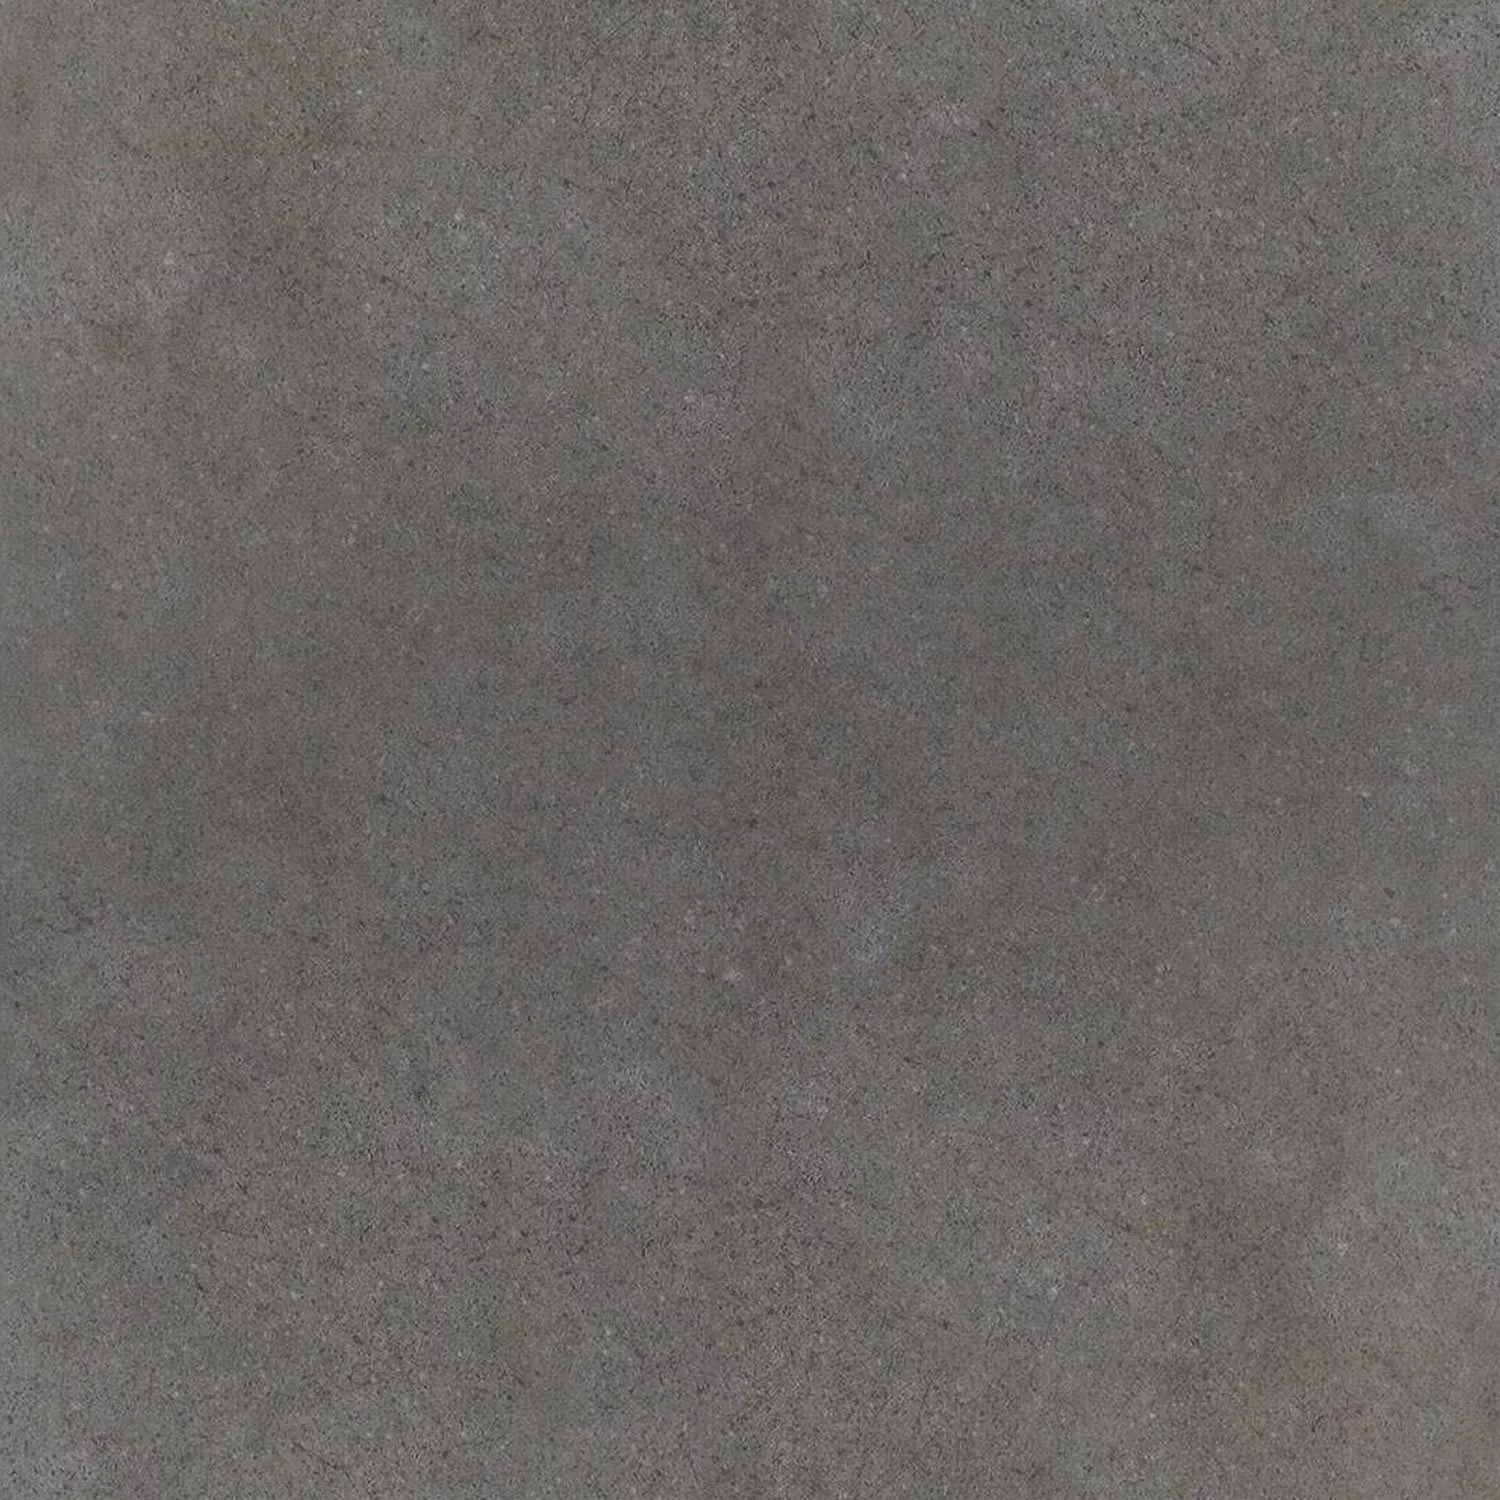 Πρότυπο Όψη Πλακιδίων Tσιμέντου Πλακάκια Δαπέδου Madrid Σκούρο Γκρι